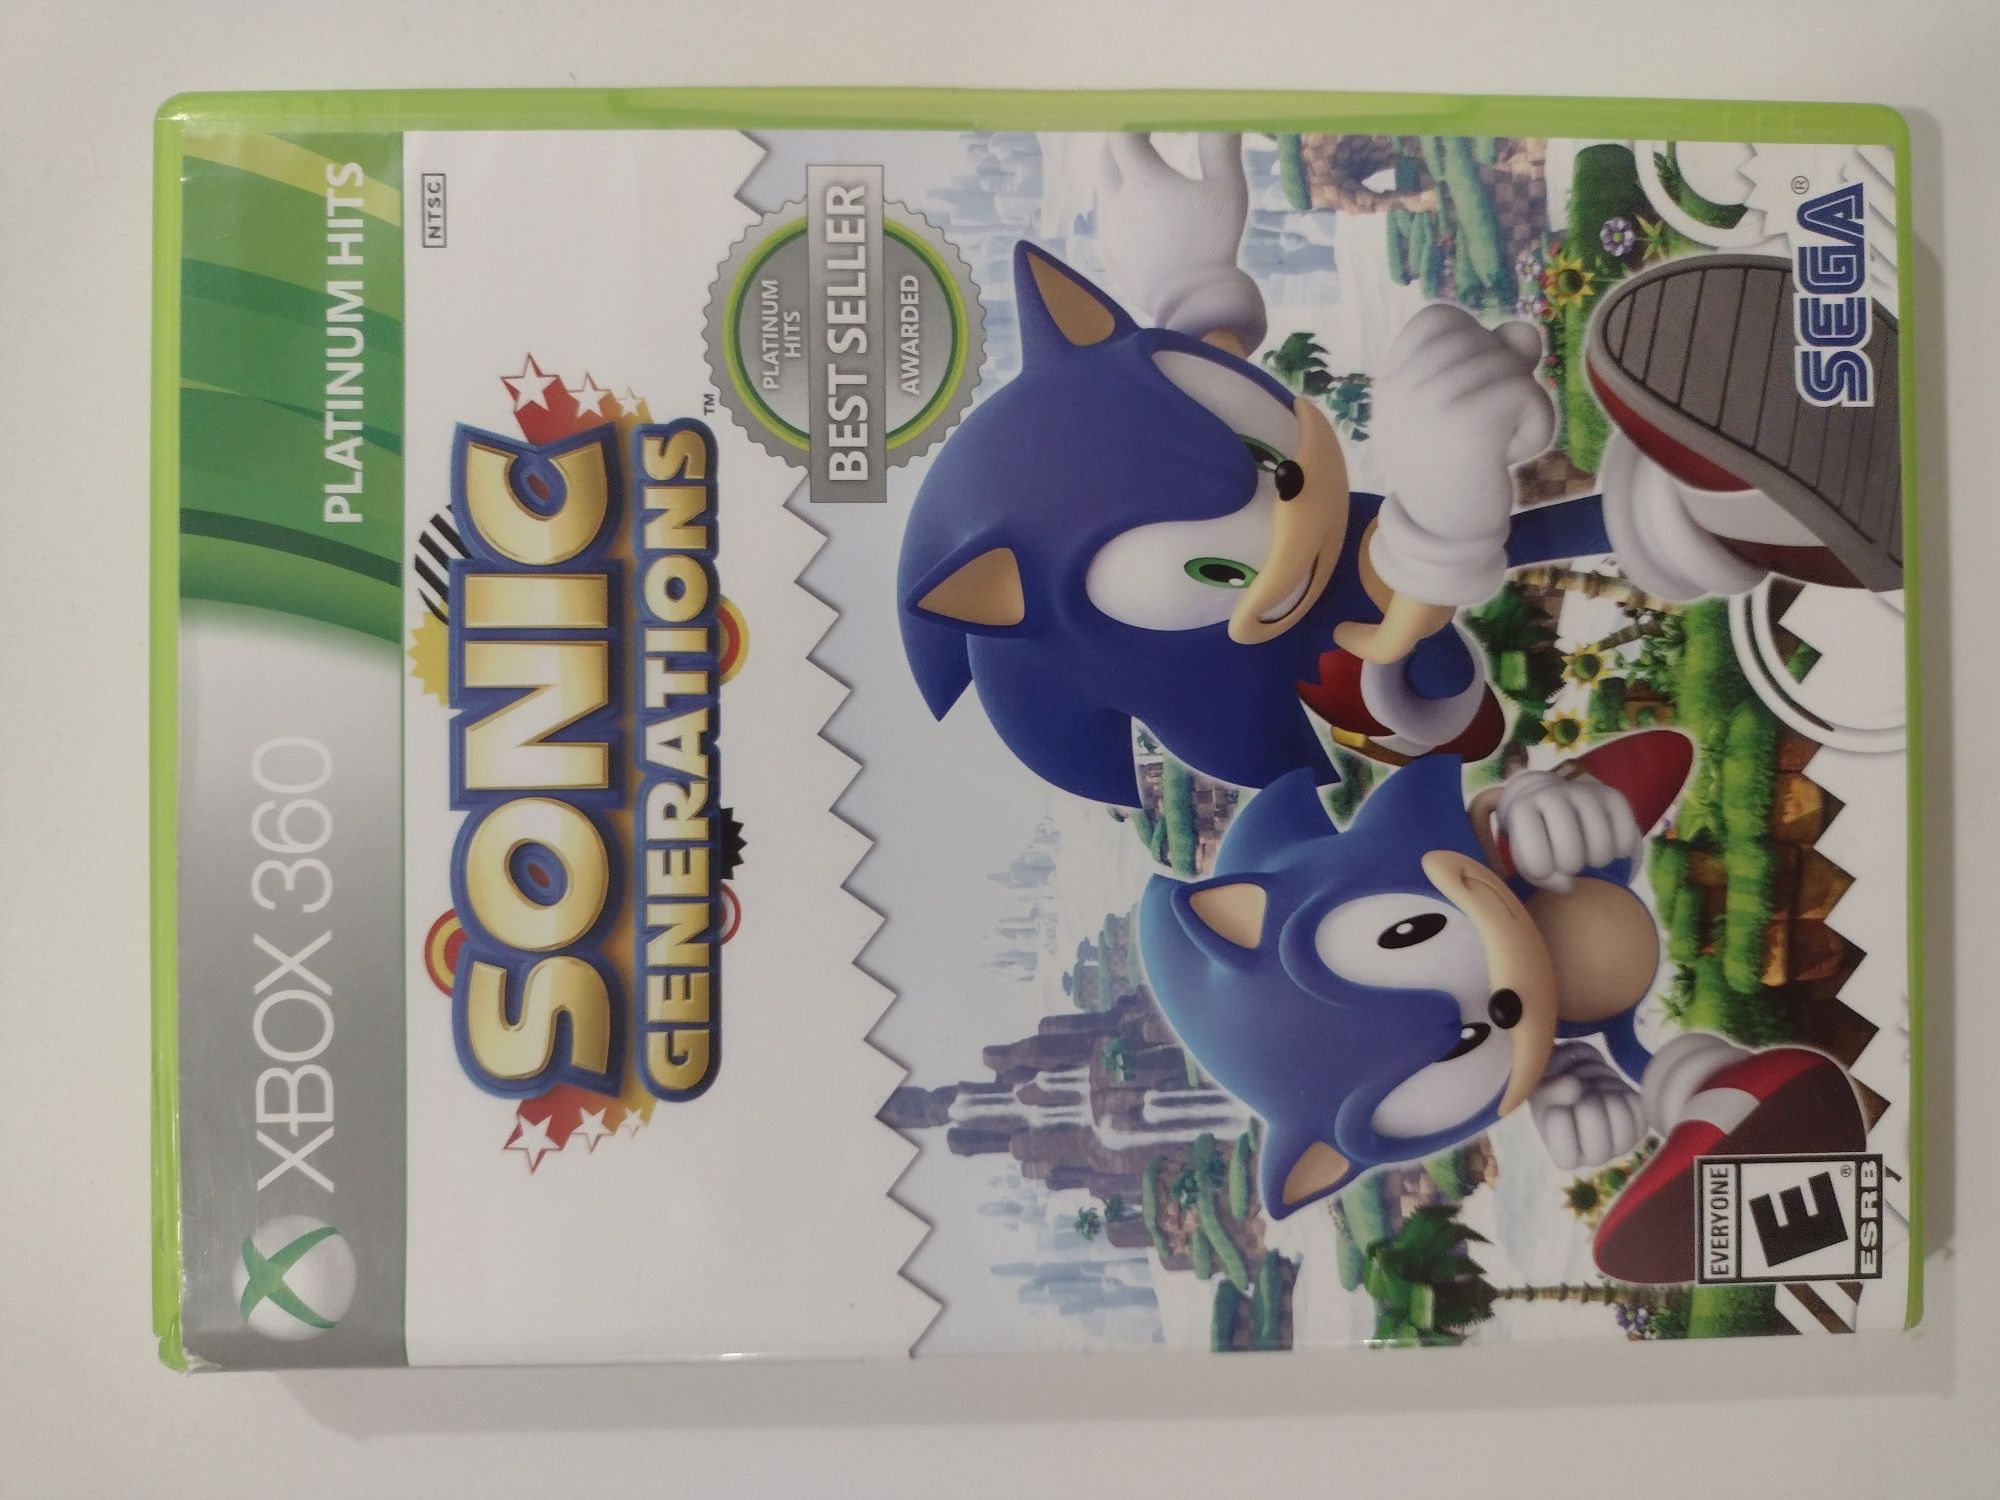 Jogo Sonic Generations Xbox 360 Vila Verde E Barbudo • OLX Portugal